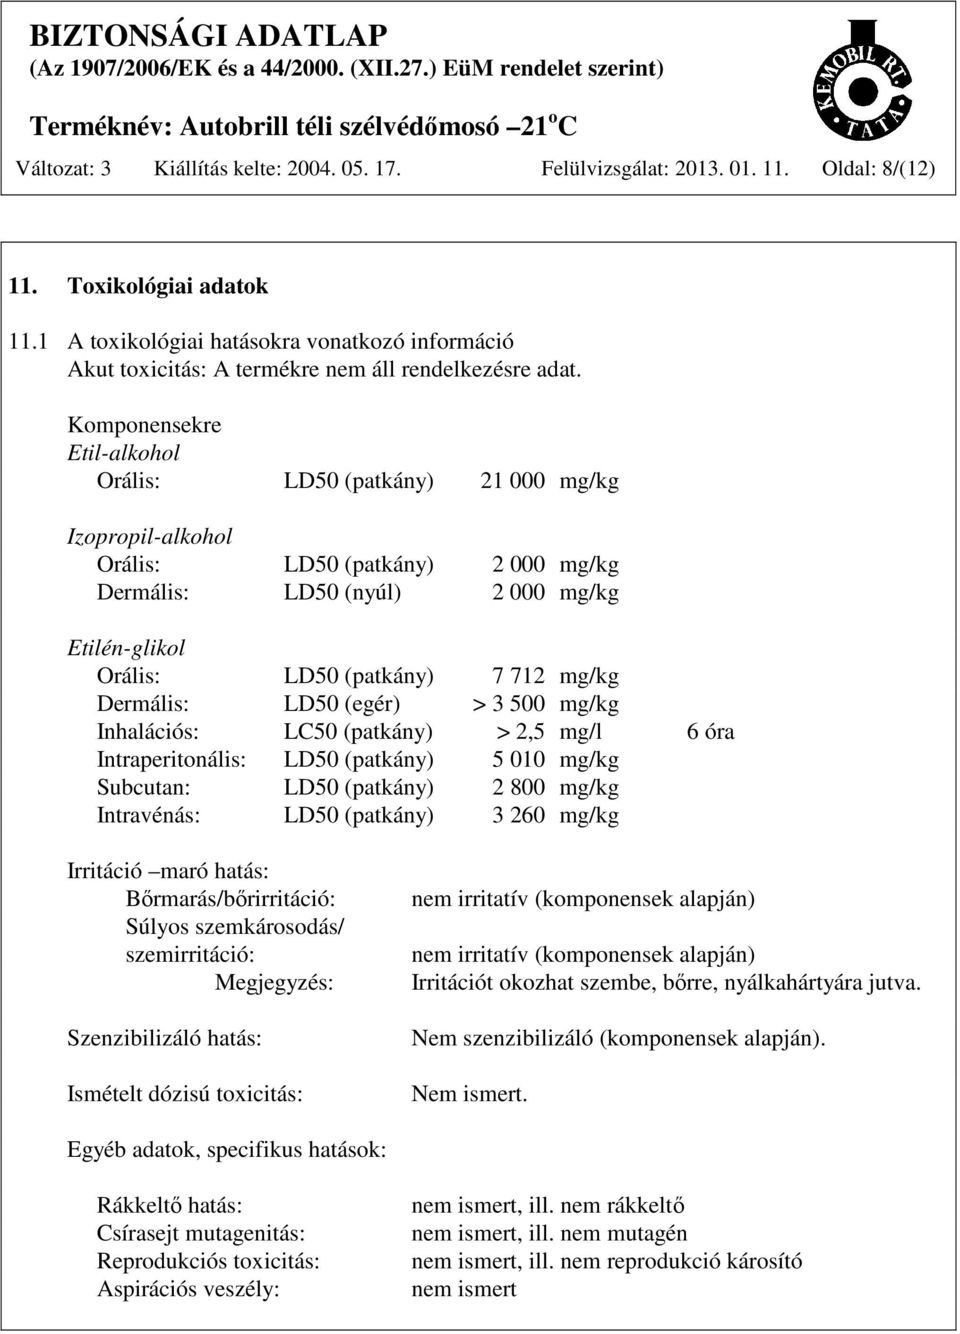 Komponensekre Etil-alkohol Orális: LD50 (patkány) 21 000 mg/kg Izopropil-alkohol Orális: LD50 (patkány) 2 000 mg/kg Dermális: LD50 (nyúl) 2 000 mg/kg Etilén-glikol Orális: LD50 (patkány) 7 712 mg/kg